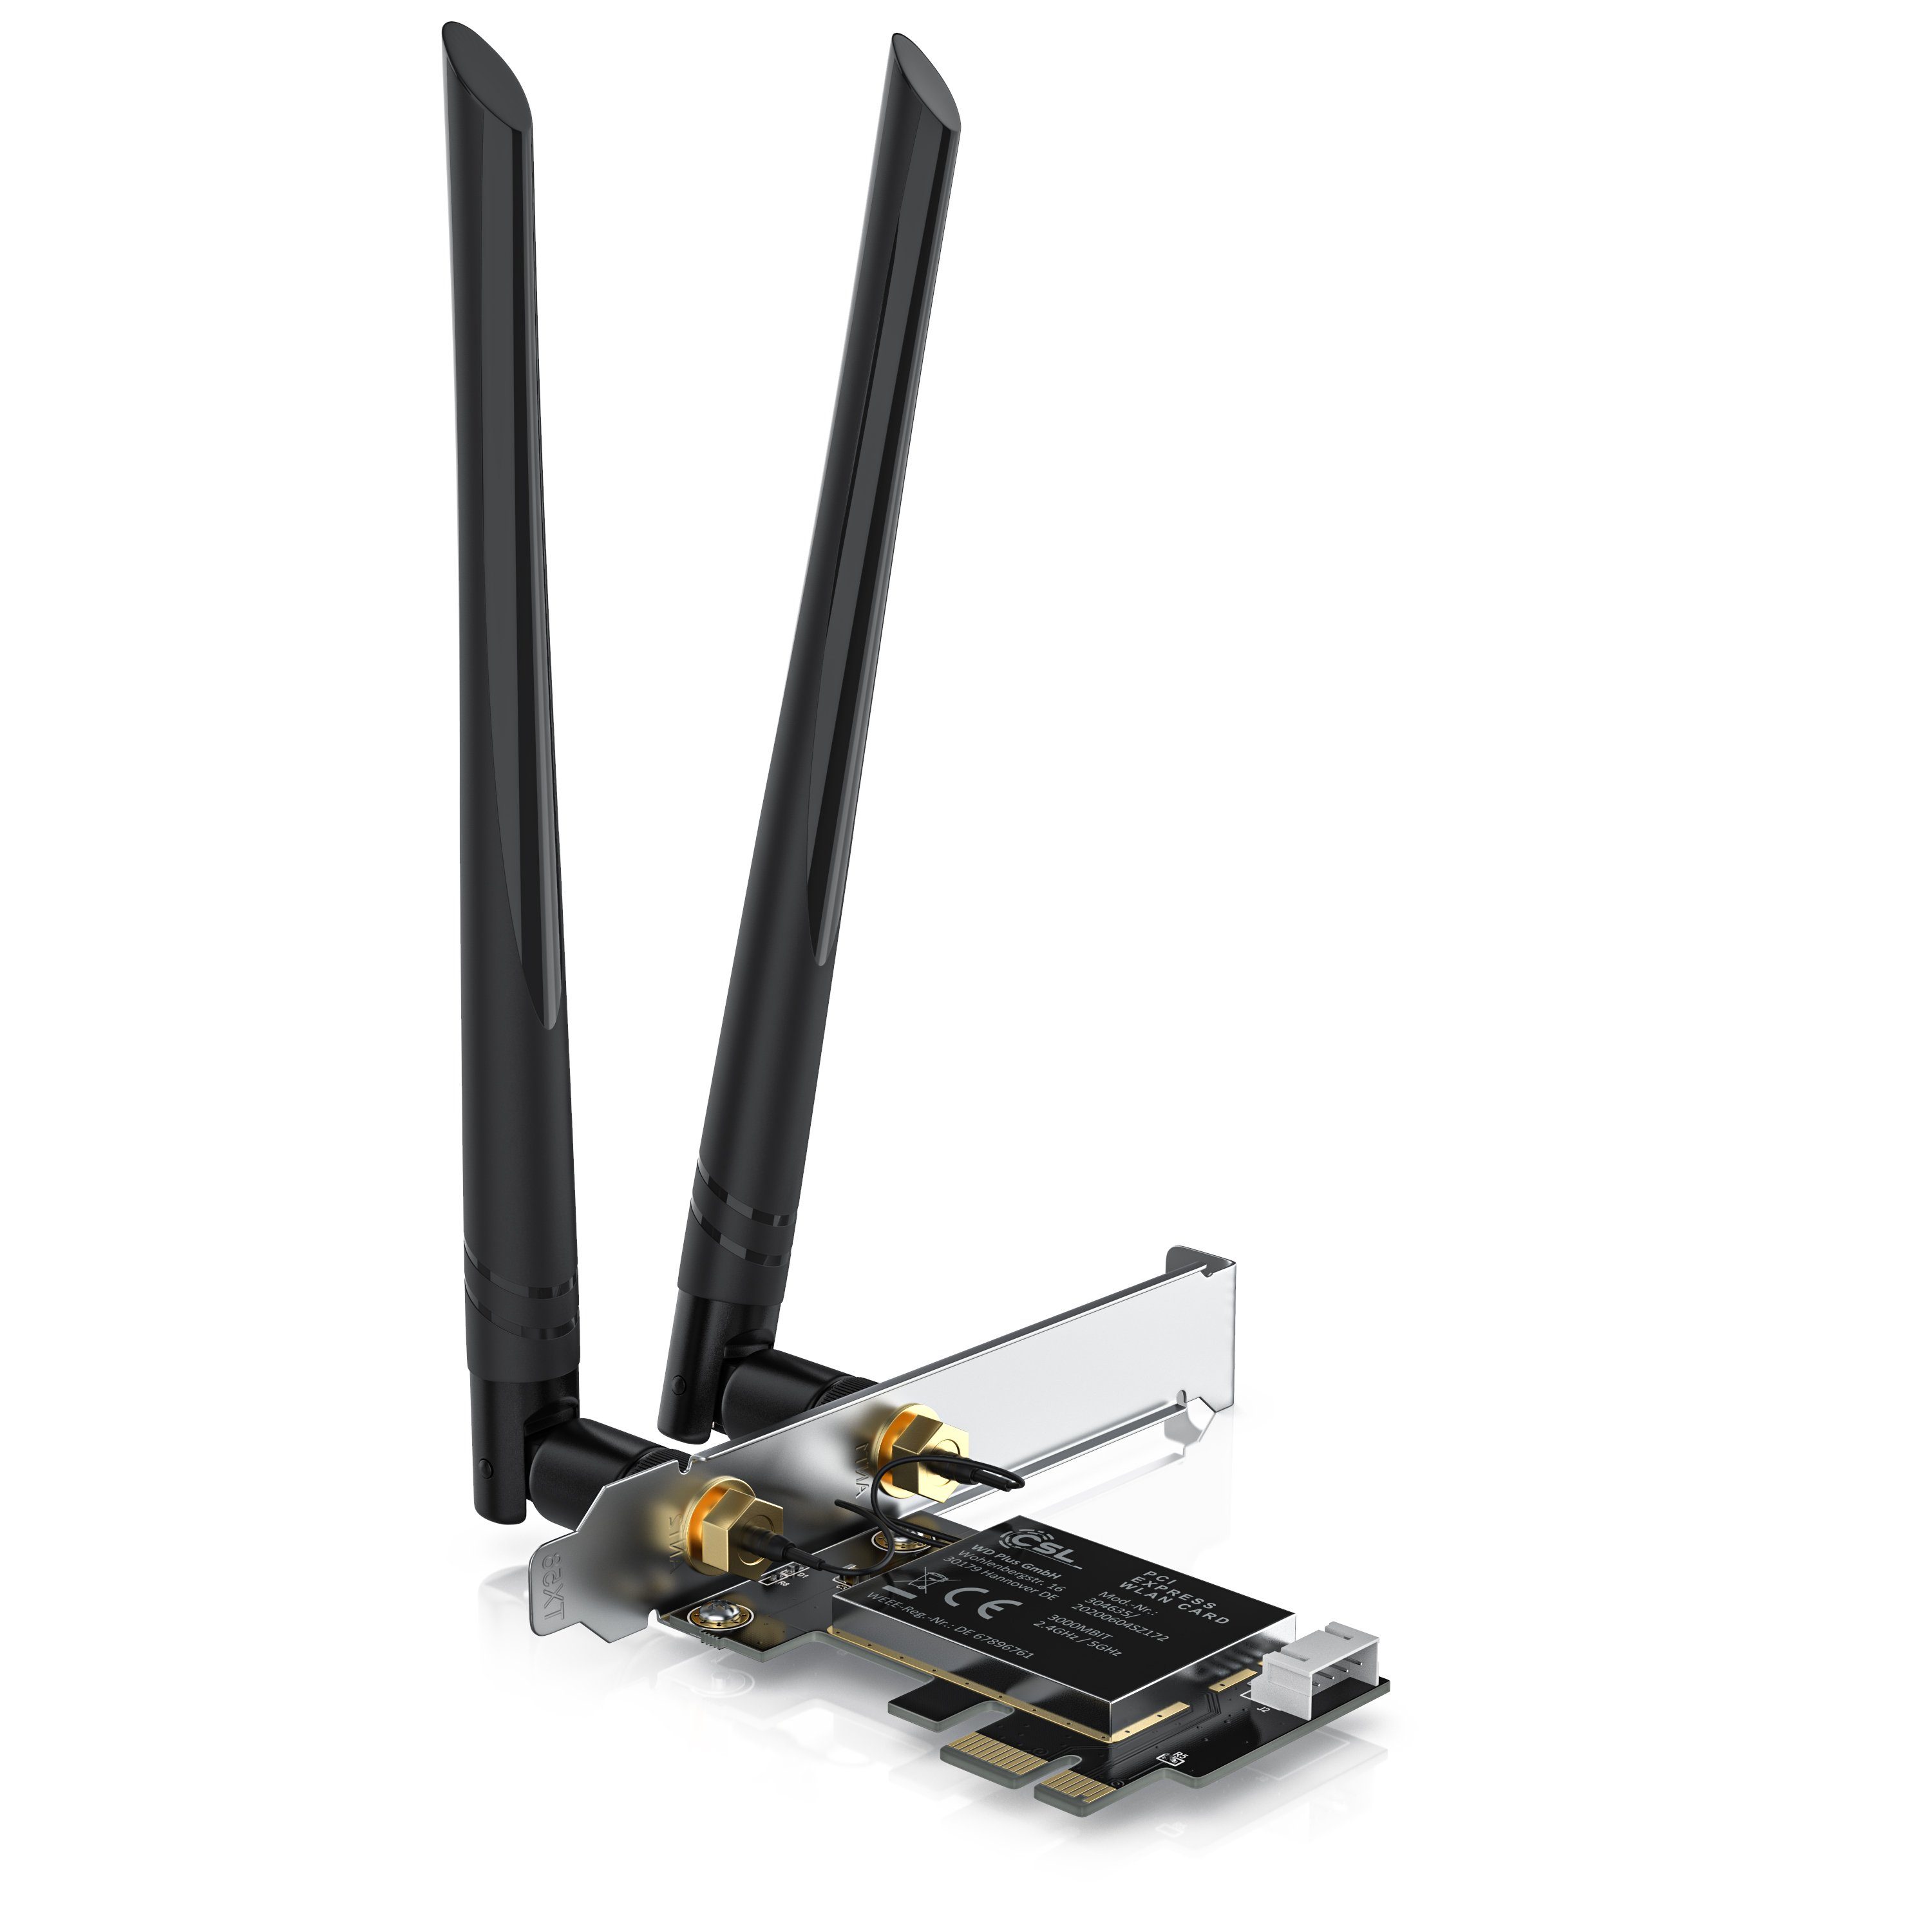 CSL Netzwerk-Adapter, 3000 Mbit WLAN PCIe Netzwerkkarte 2,4 Ghz und 5 Ghz -  2x externe 5dbi WiFi Antennen